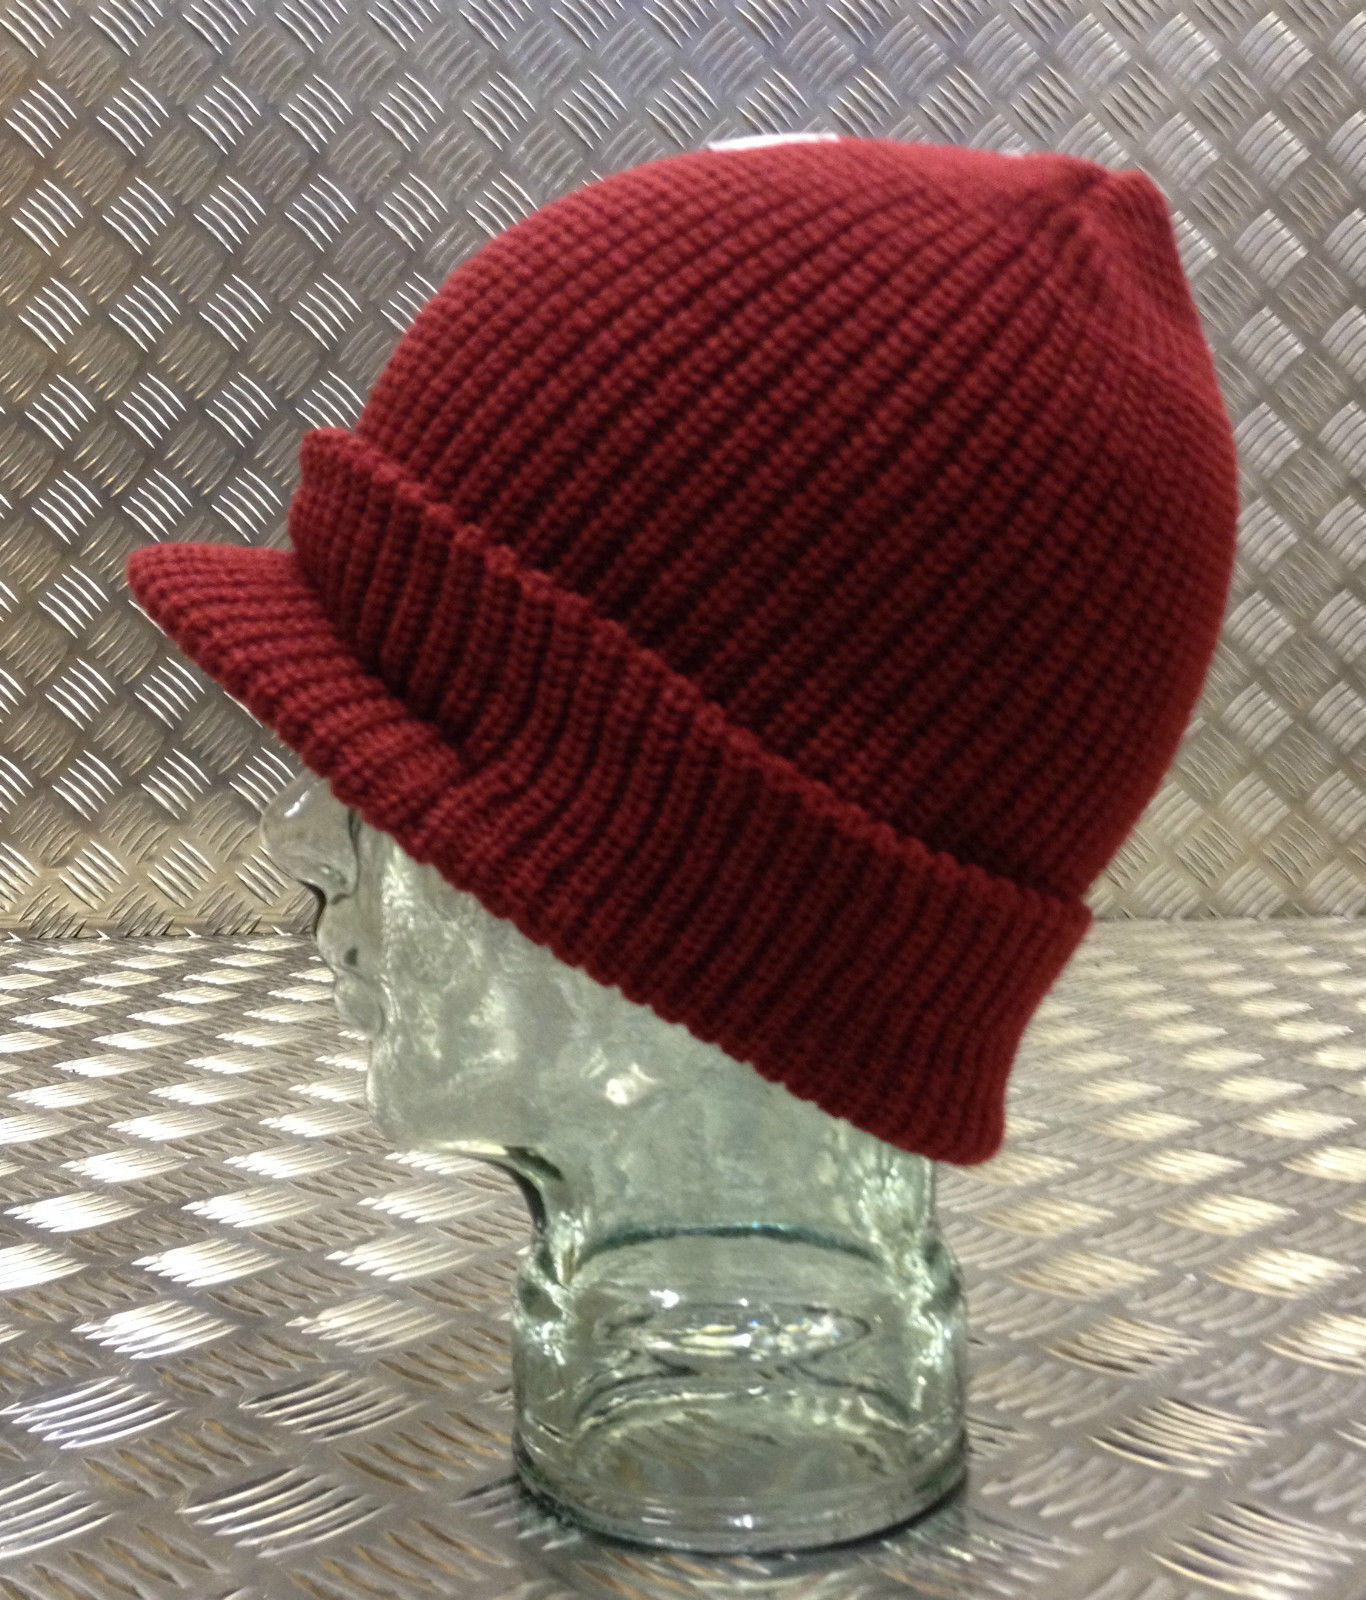 Dark Red / Maroon Peak / Peaked Beanie Hat / Radar Cap - One size ...